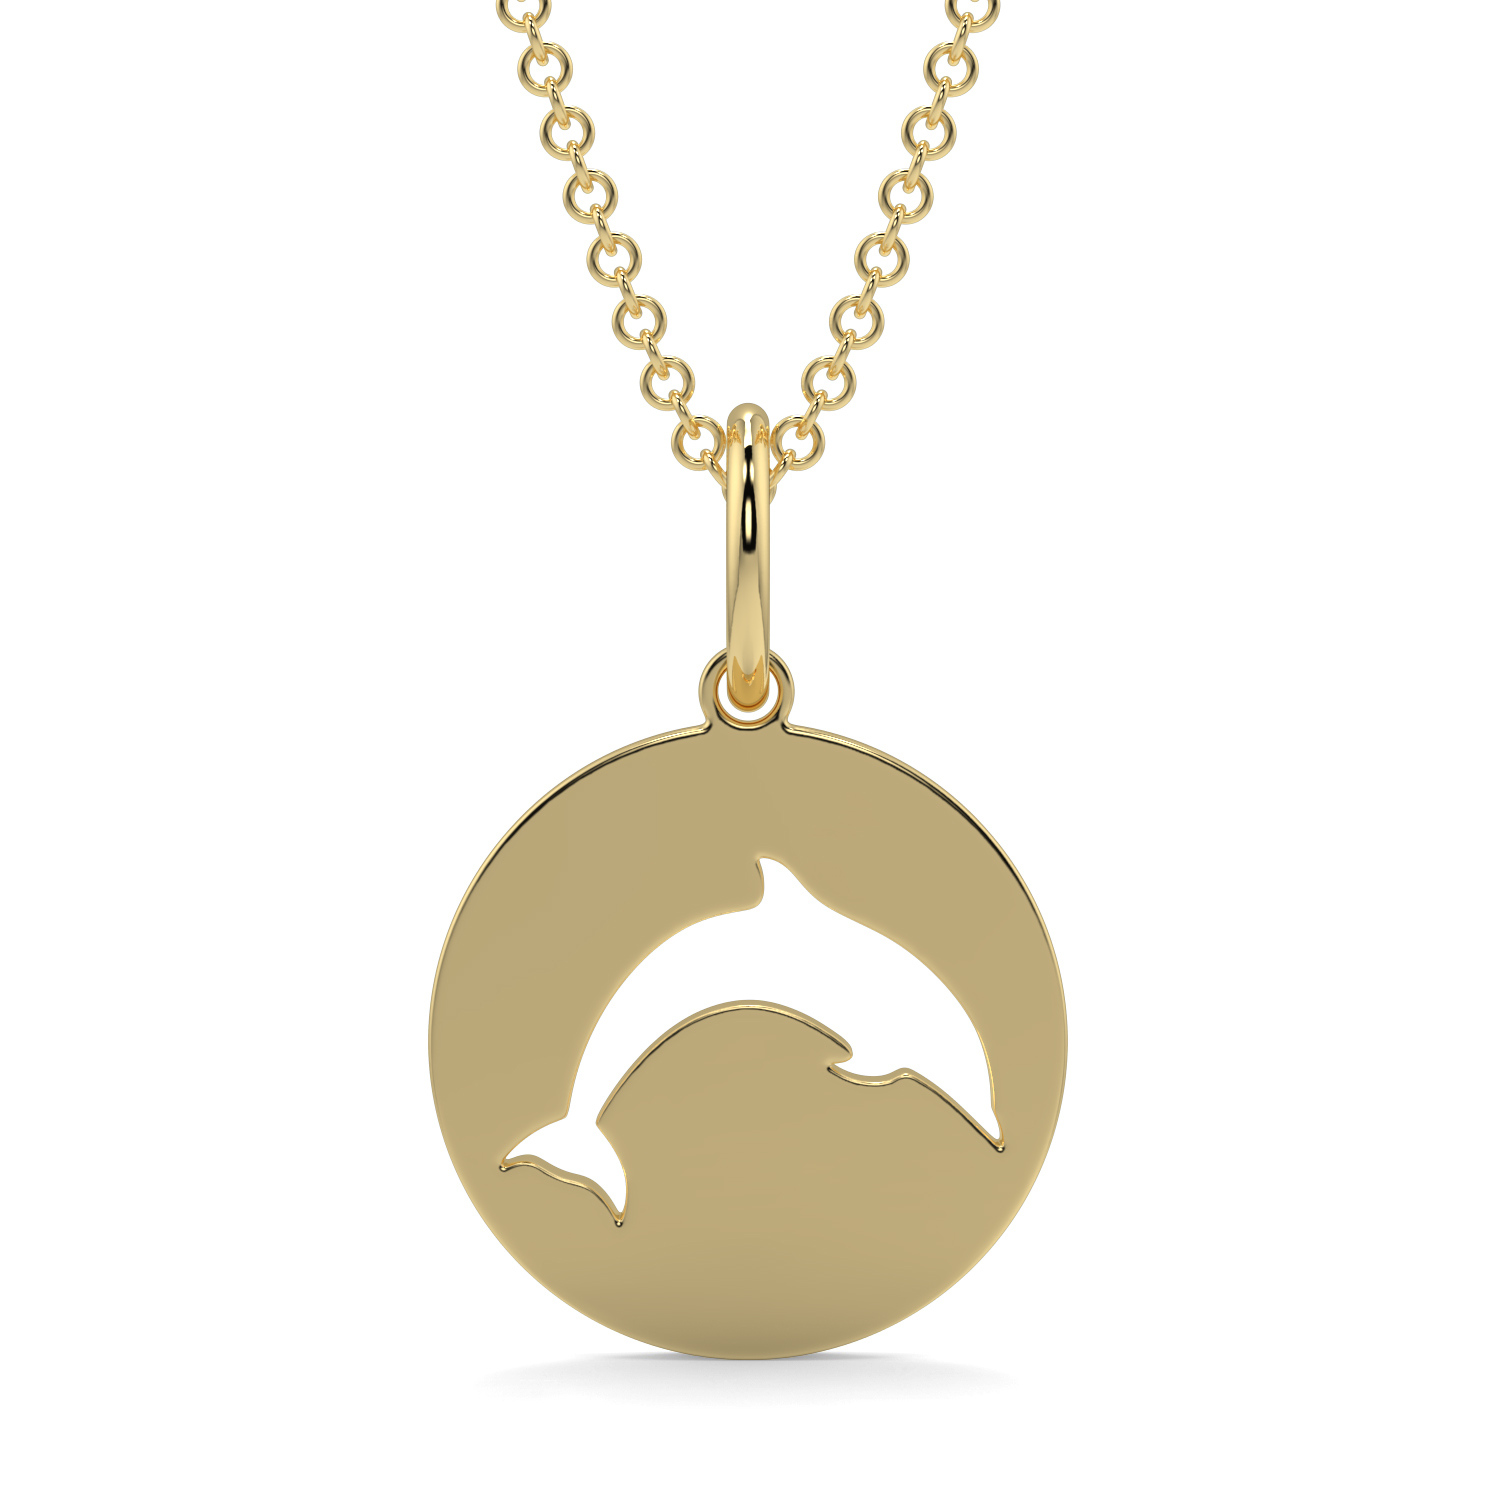 Dolphin Pendant, Gold Pendant, Dolphin Gold Pendant